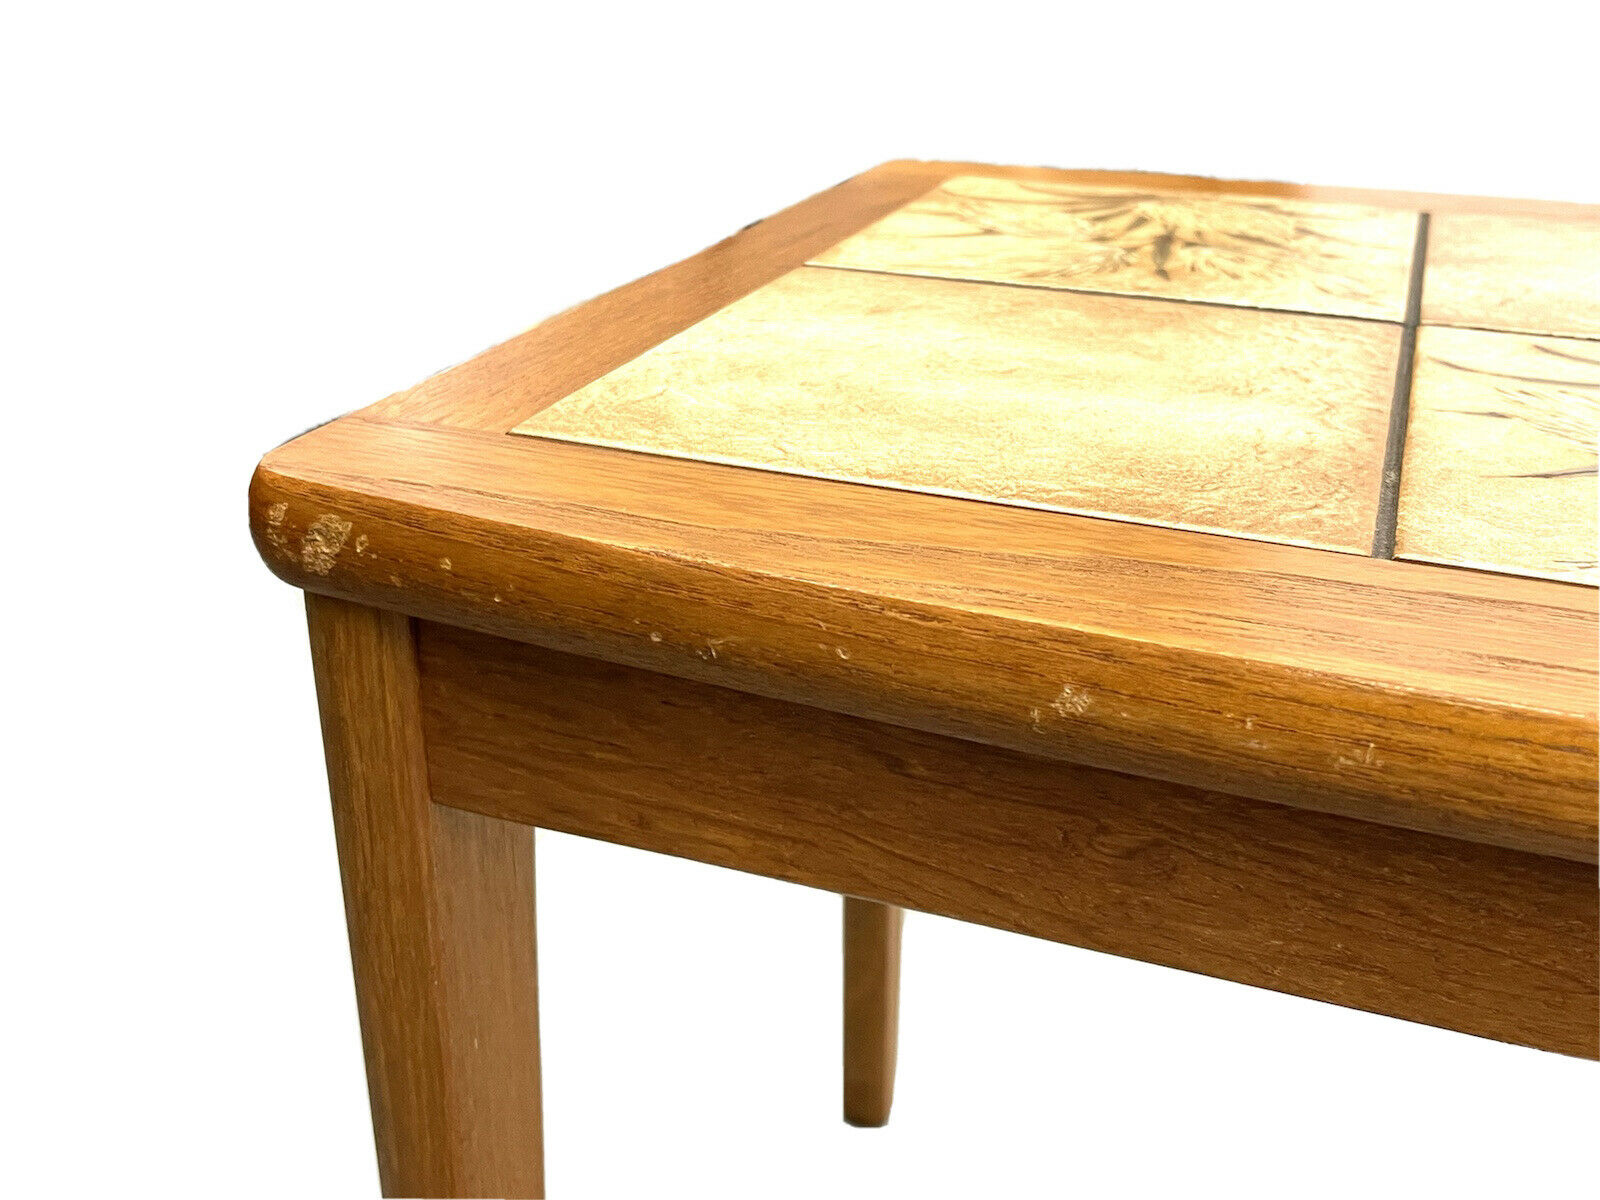 BRDR. Furbo, Danish, Mid-Century Nest Of Teak Tiled Tables